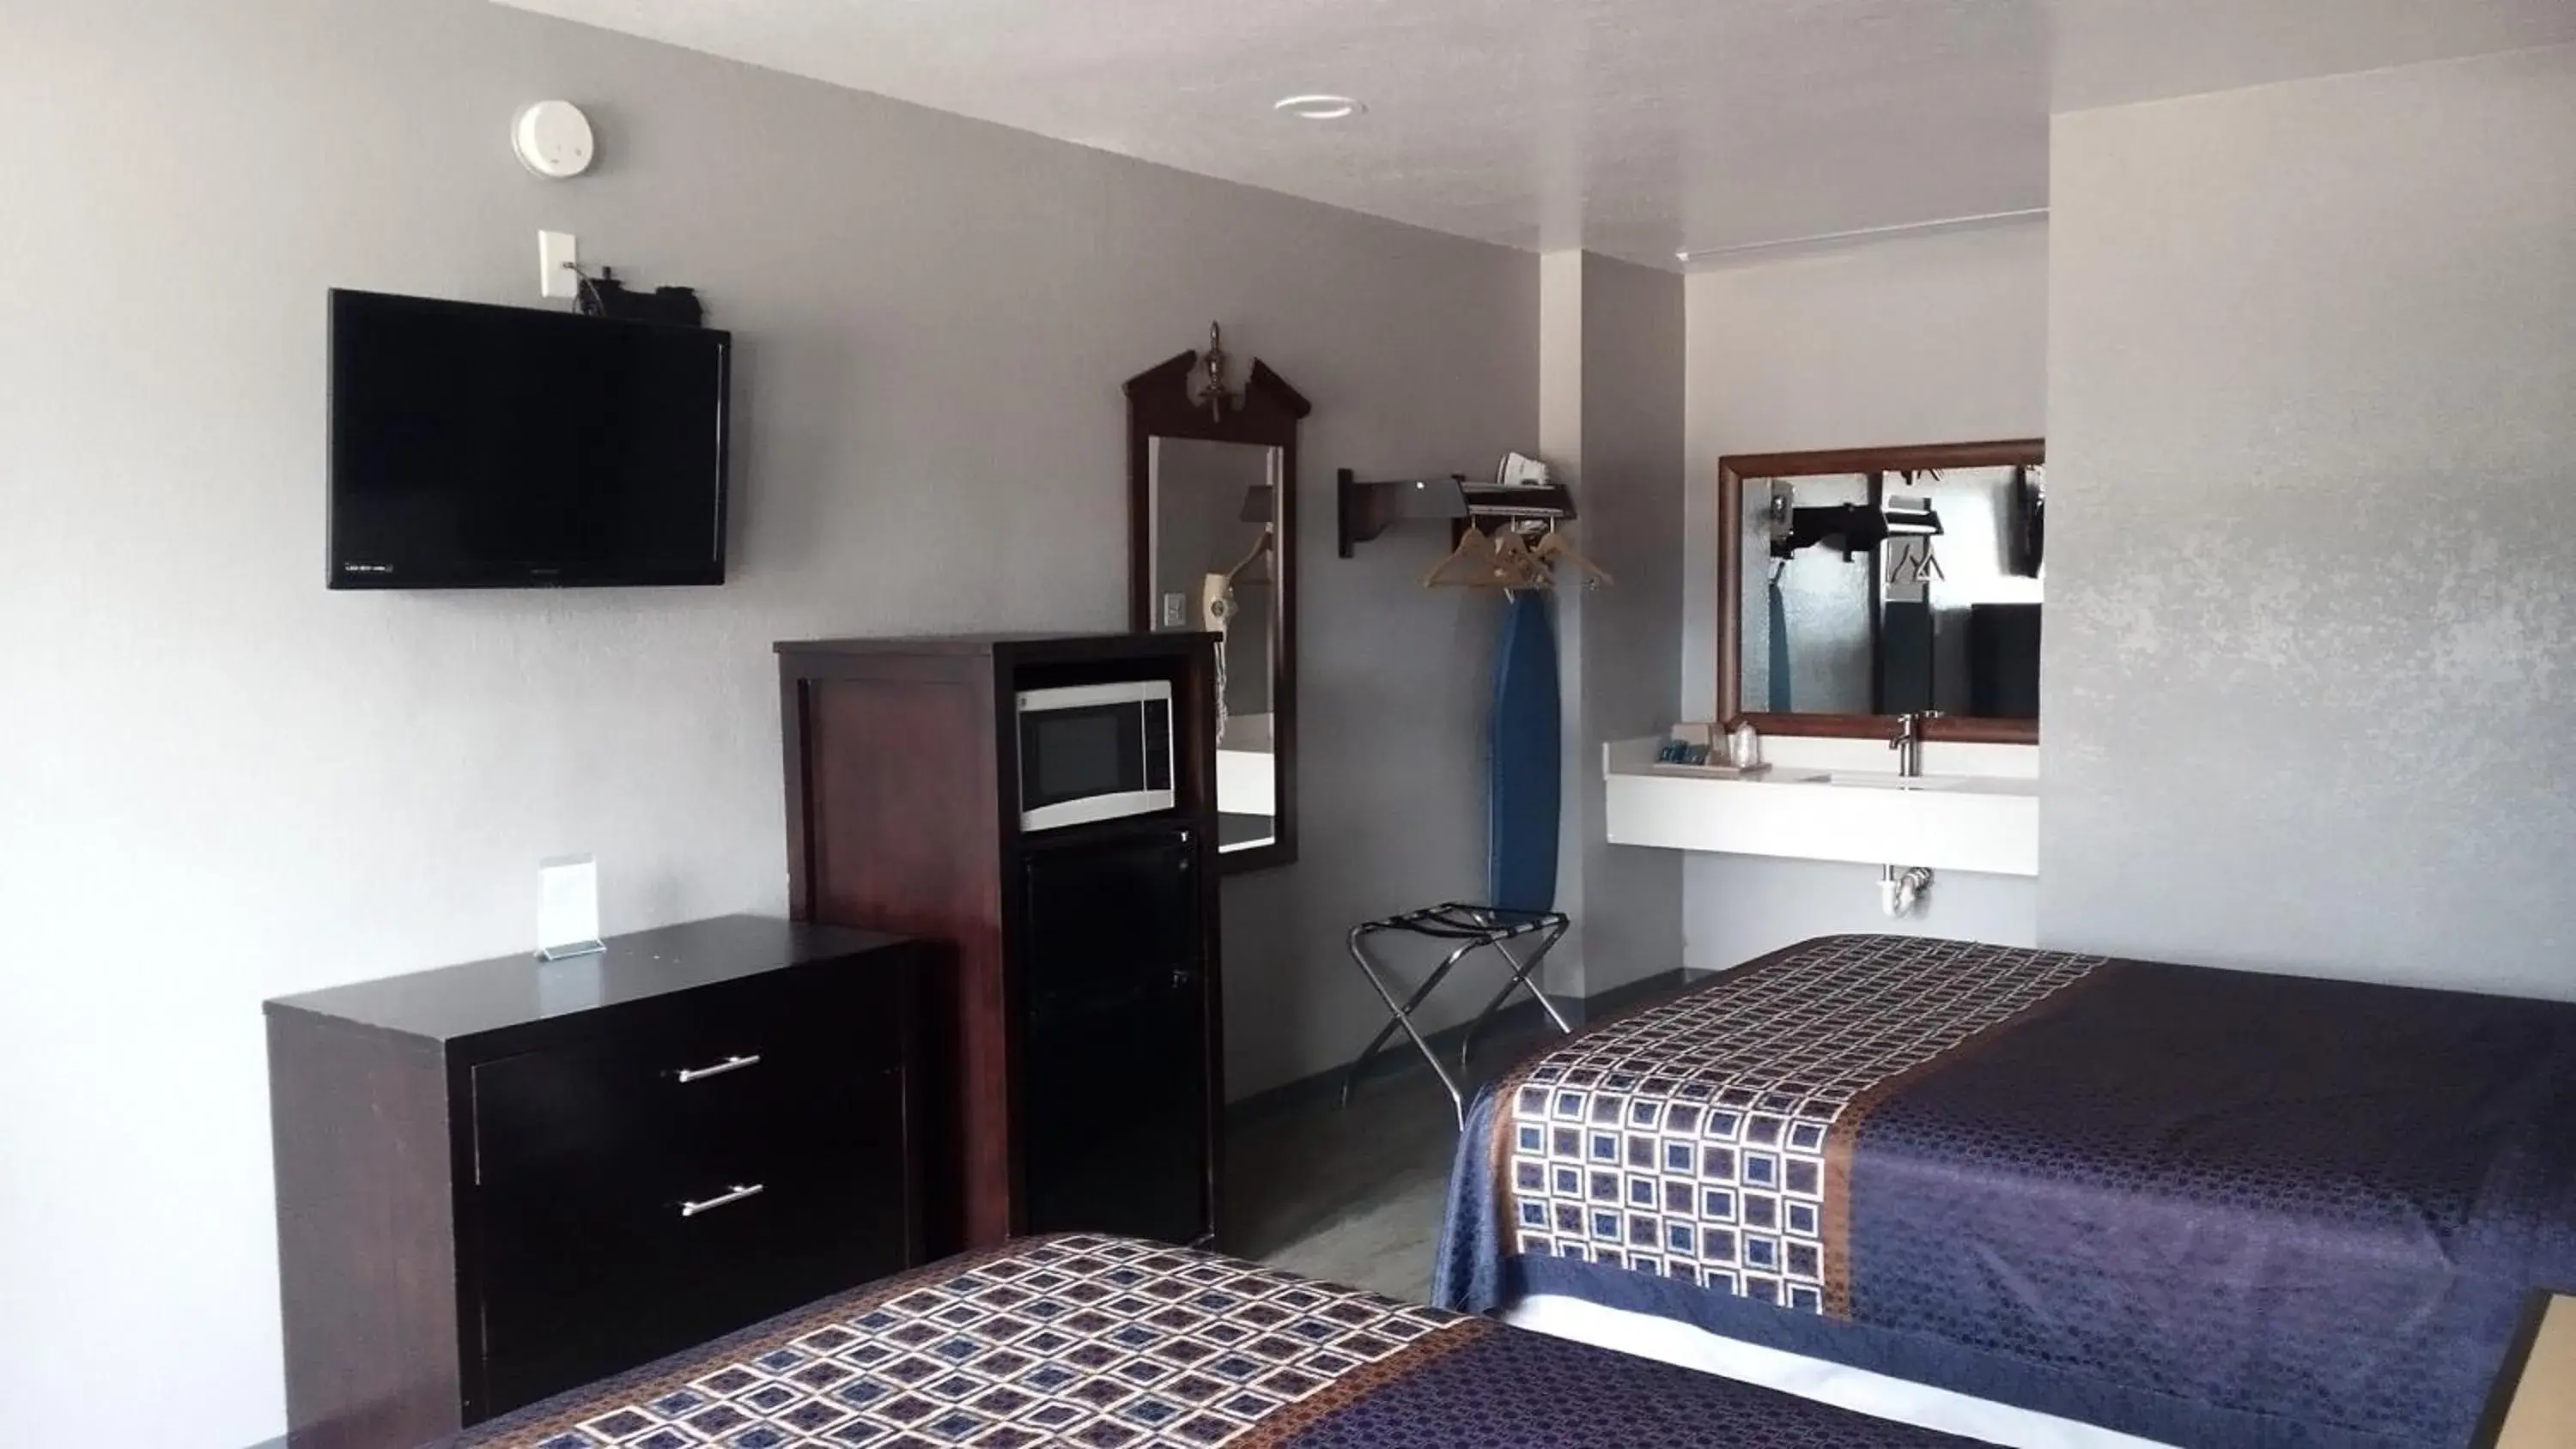 Bed in Coachman's Inn & Suites